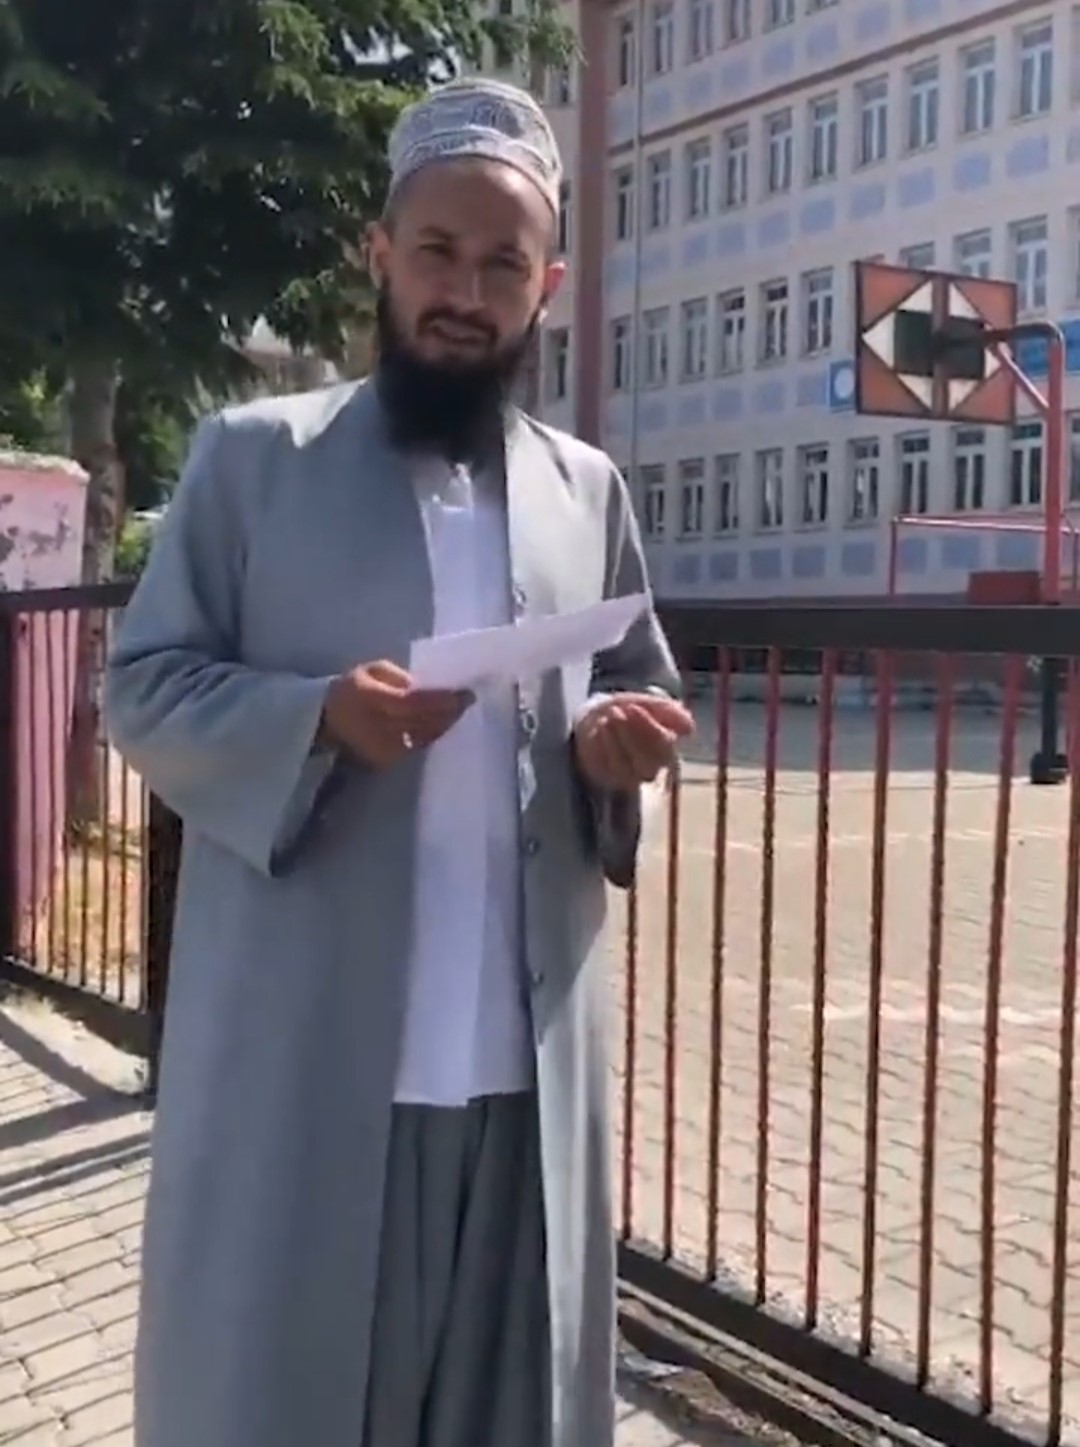 Kütahya’da bir imam ’takkeli’ olduğu gerekçesiyle sınava alınmadı iddiası